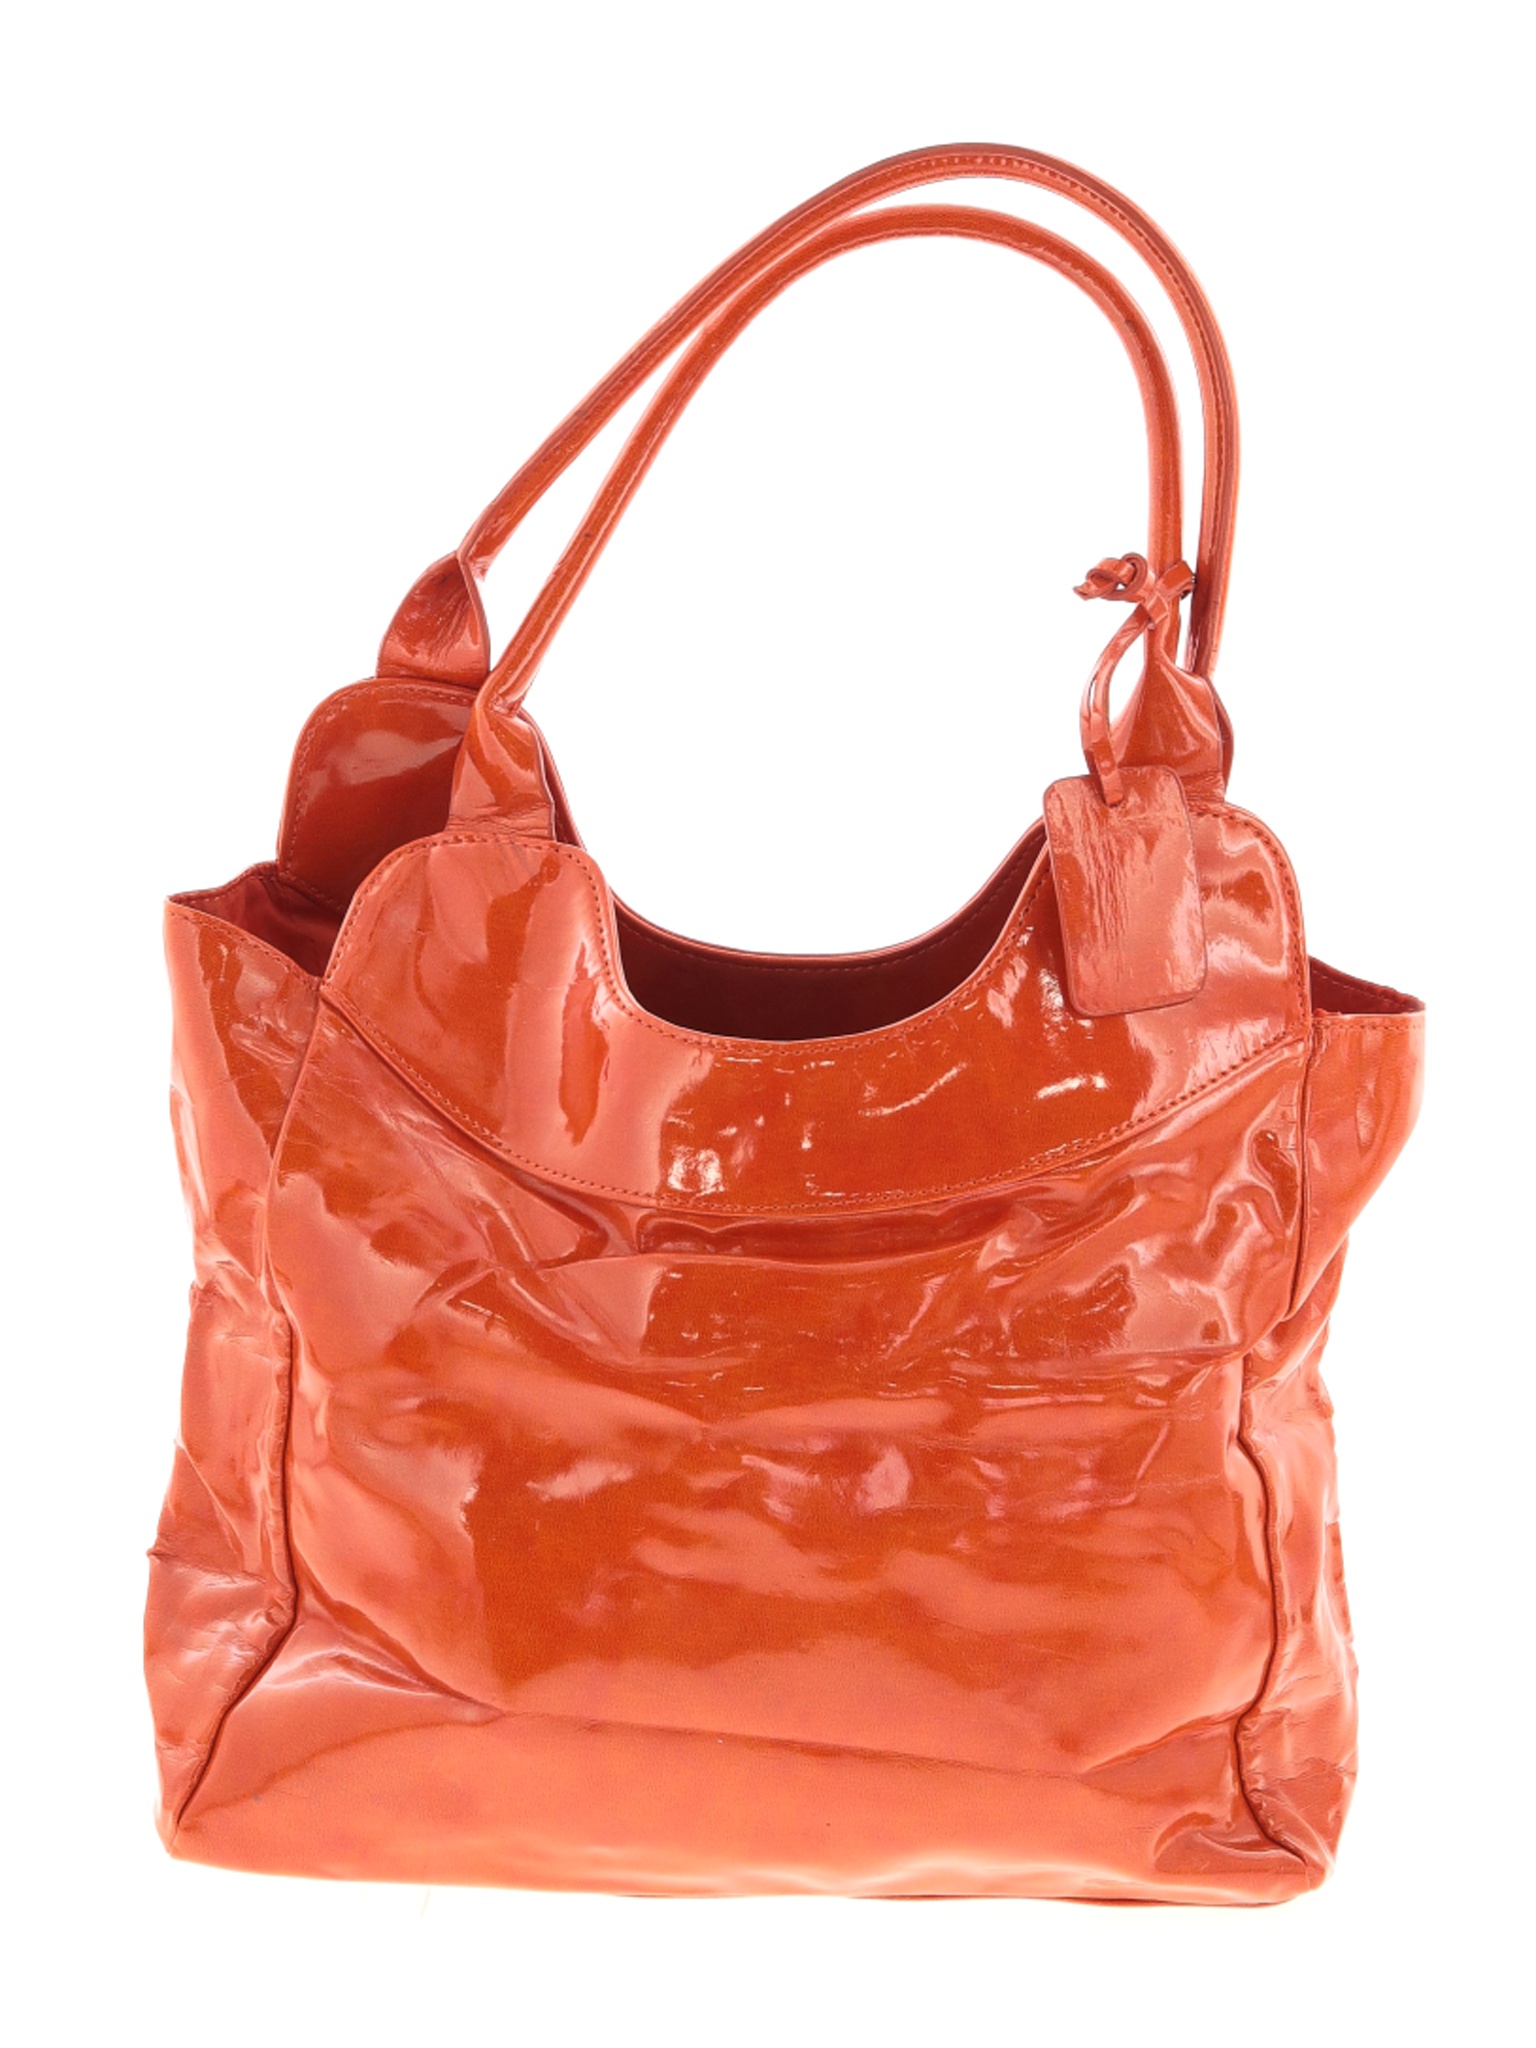 Neiman Marcus Women Orange Shoulder Bag One Size | eBay